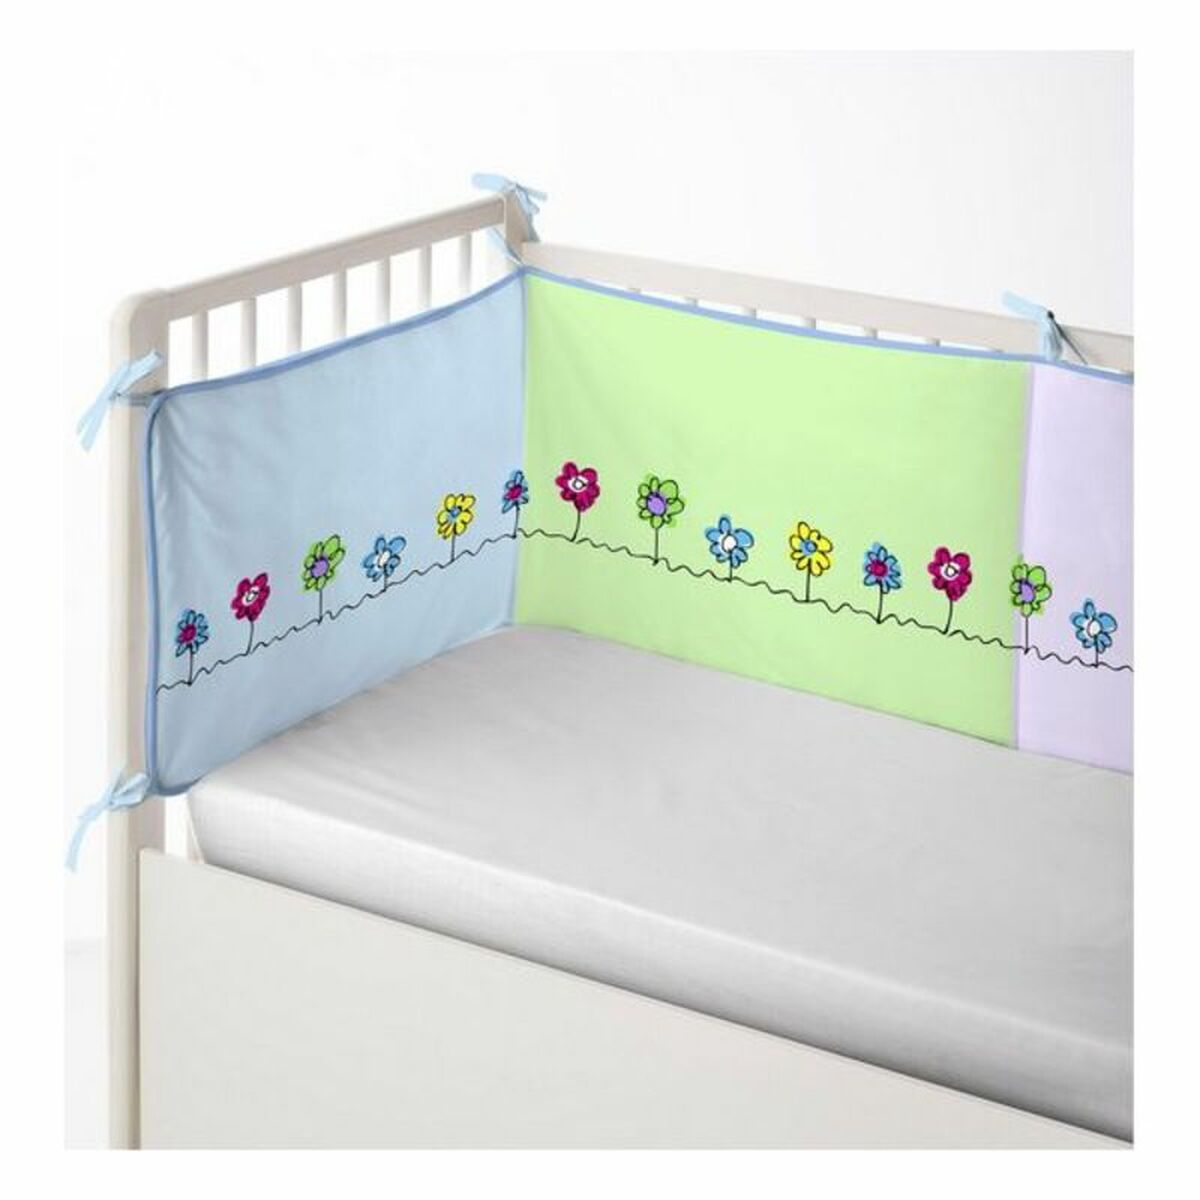 Ochraniacz na łóżeczko Cool Kids Patch Garden (60 x 60 x 60 + 40 cm)